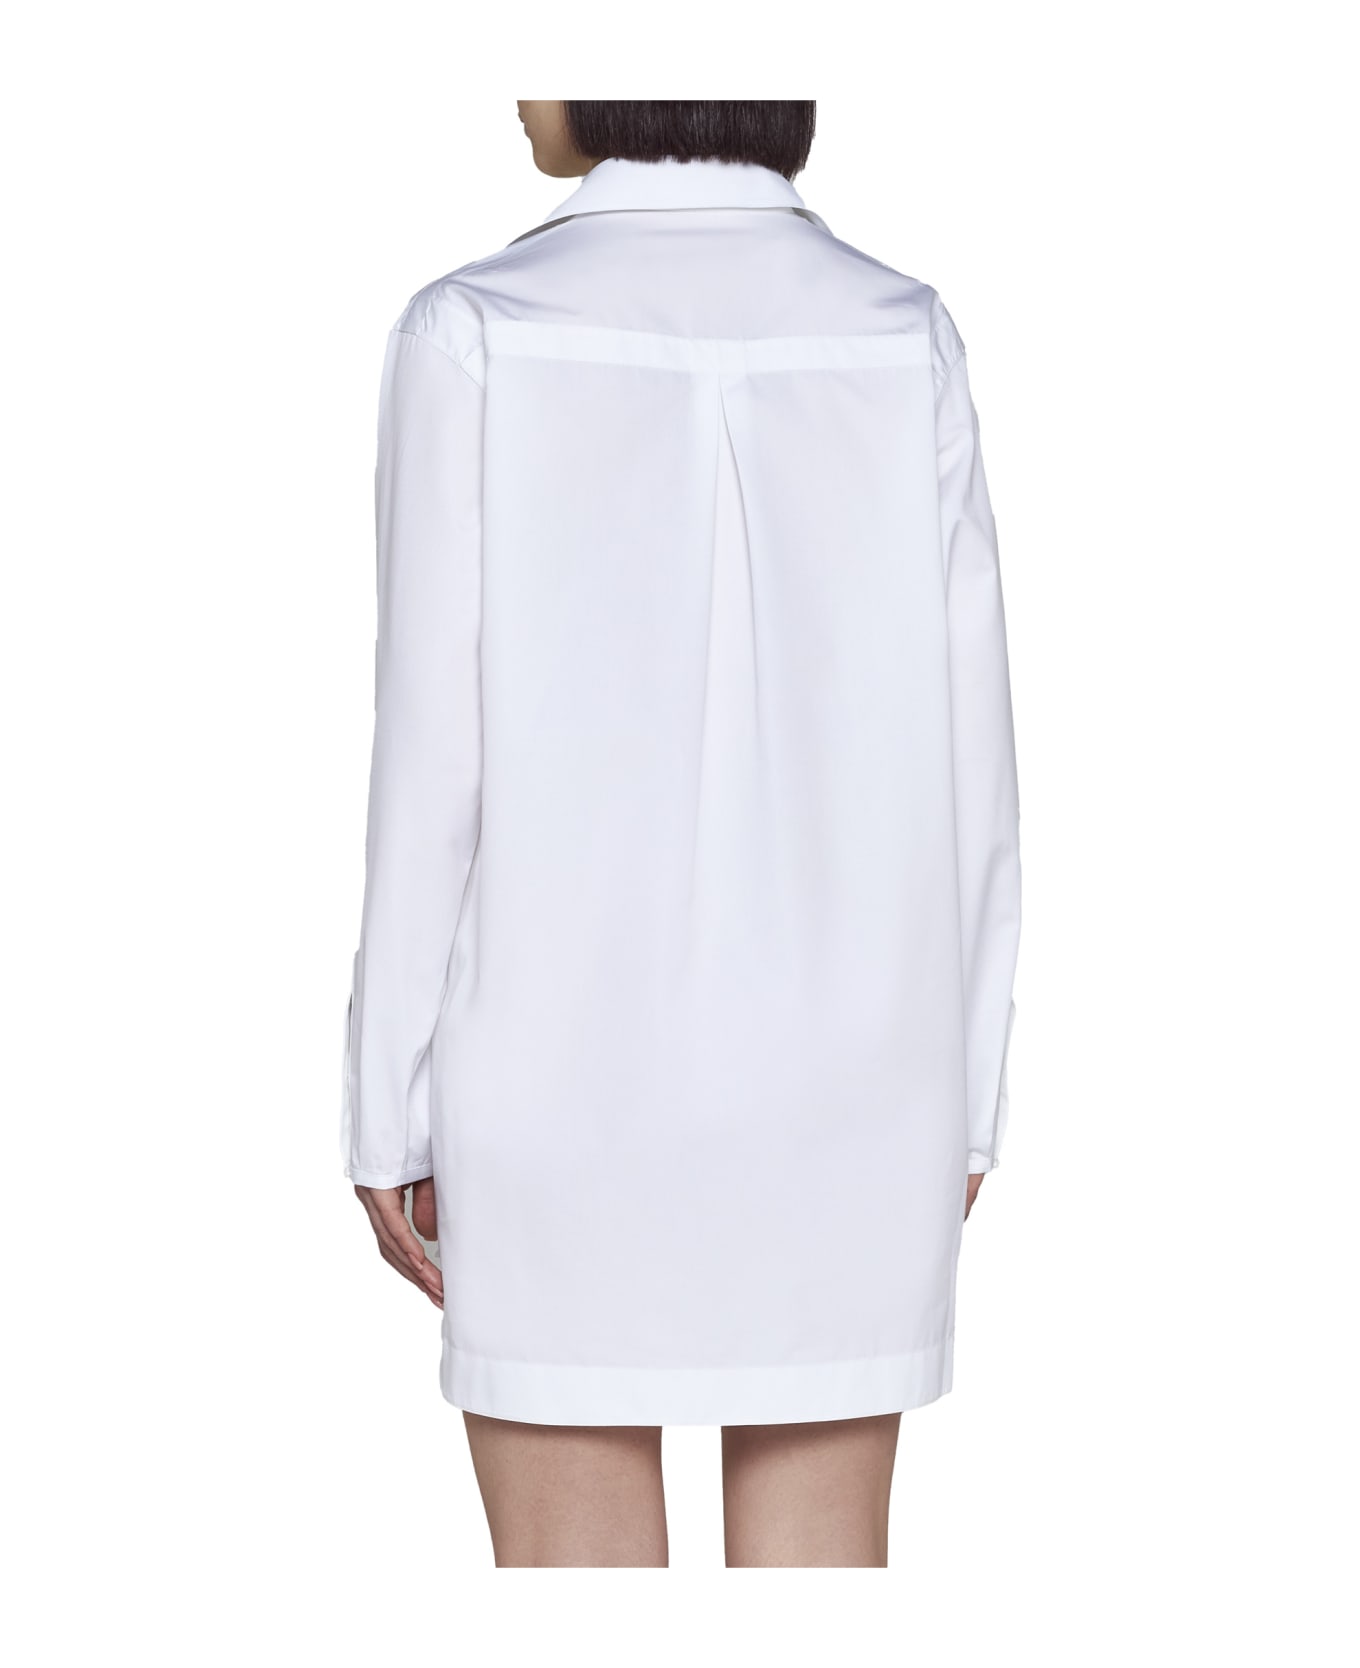 Alaia Shirt - White